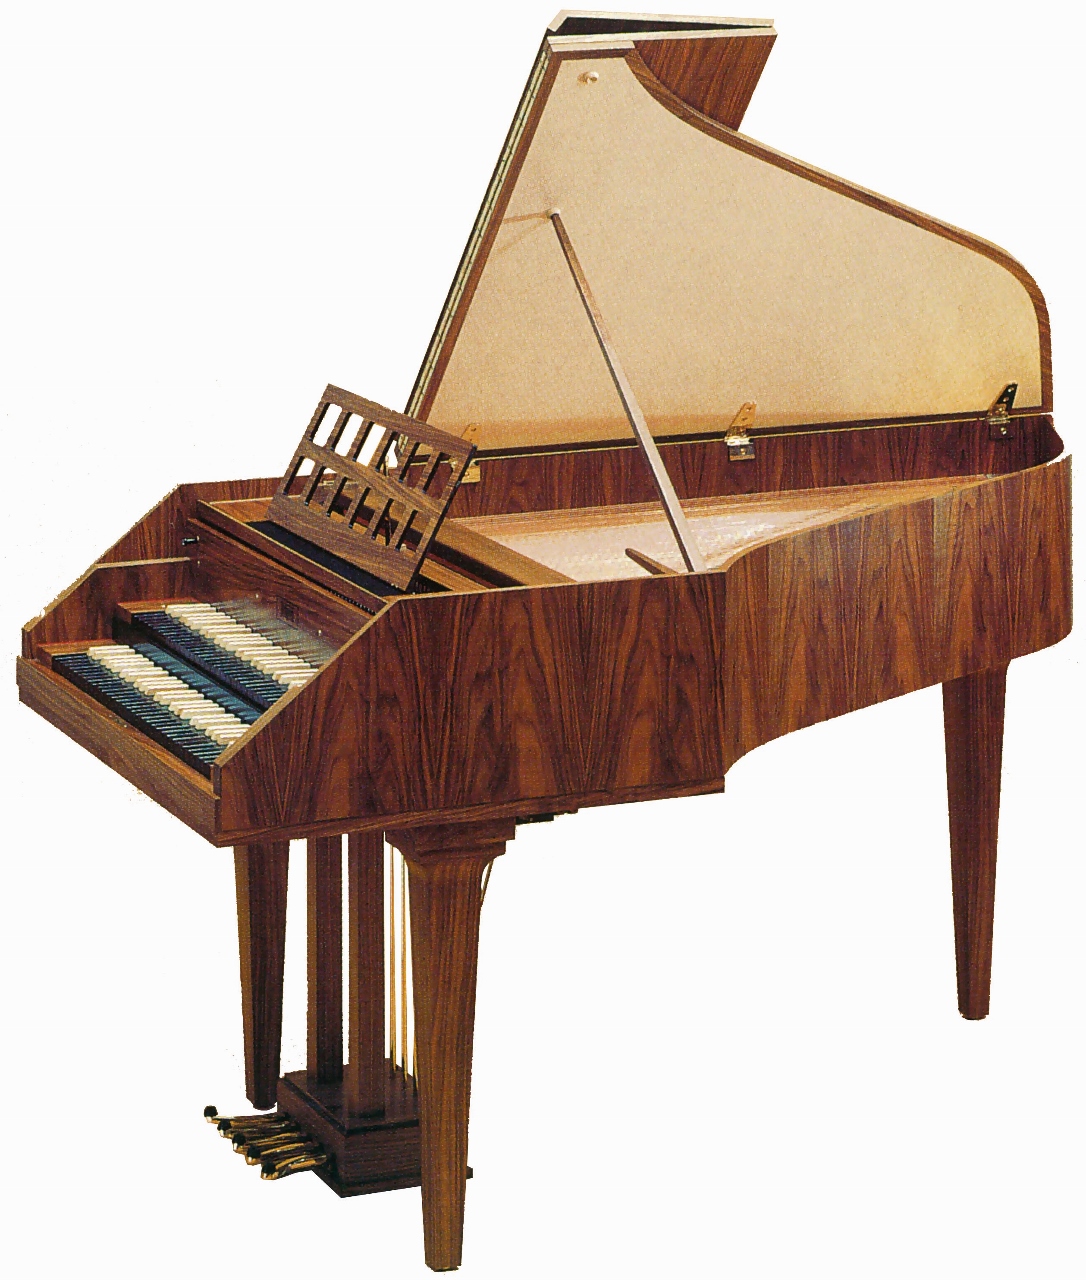 Звук клавесина. Клавесин двухмануальный. Neupert Harpsichord. Клавесин музыкальный инструмент. Клавесин струнный музыкальный инструмент.